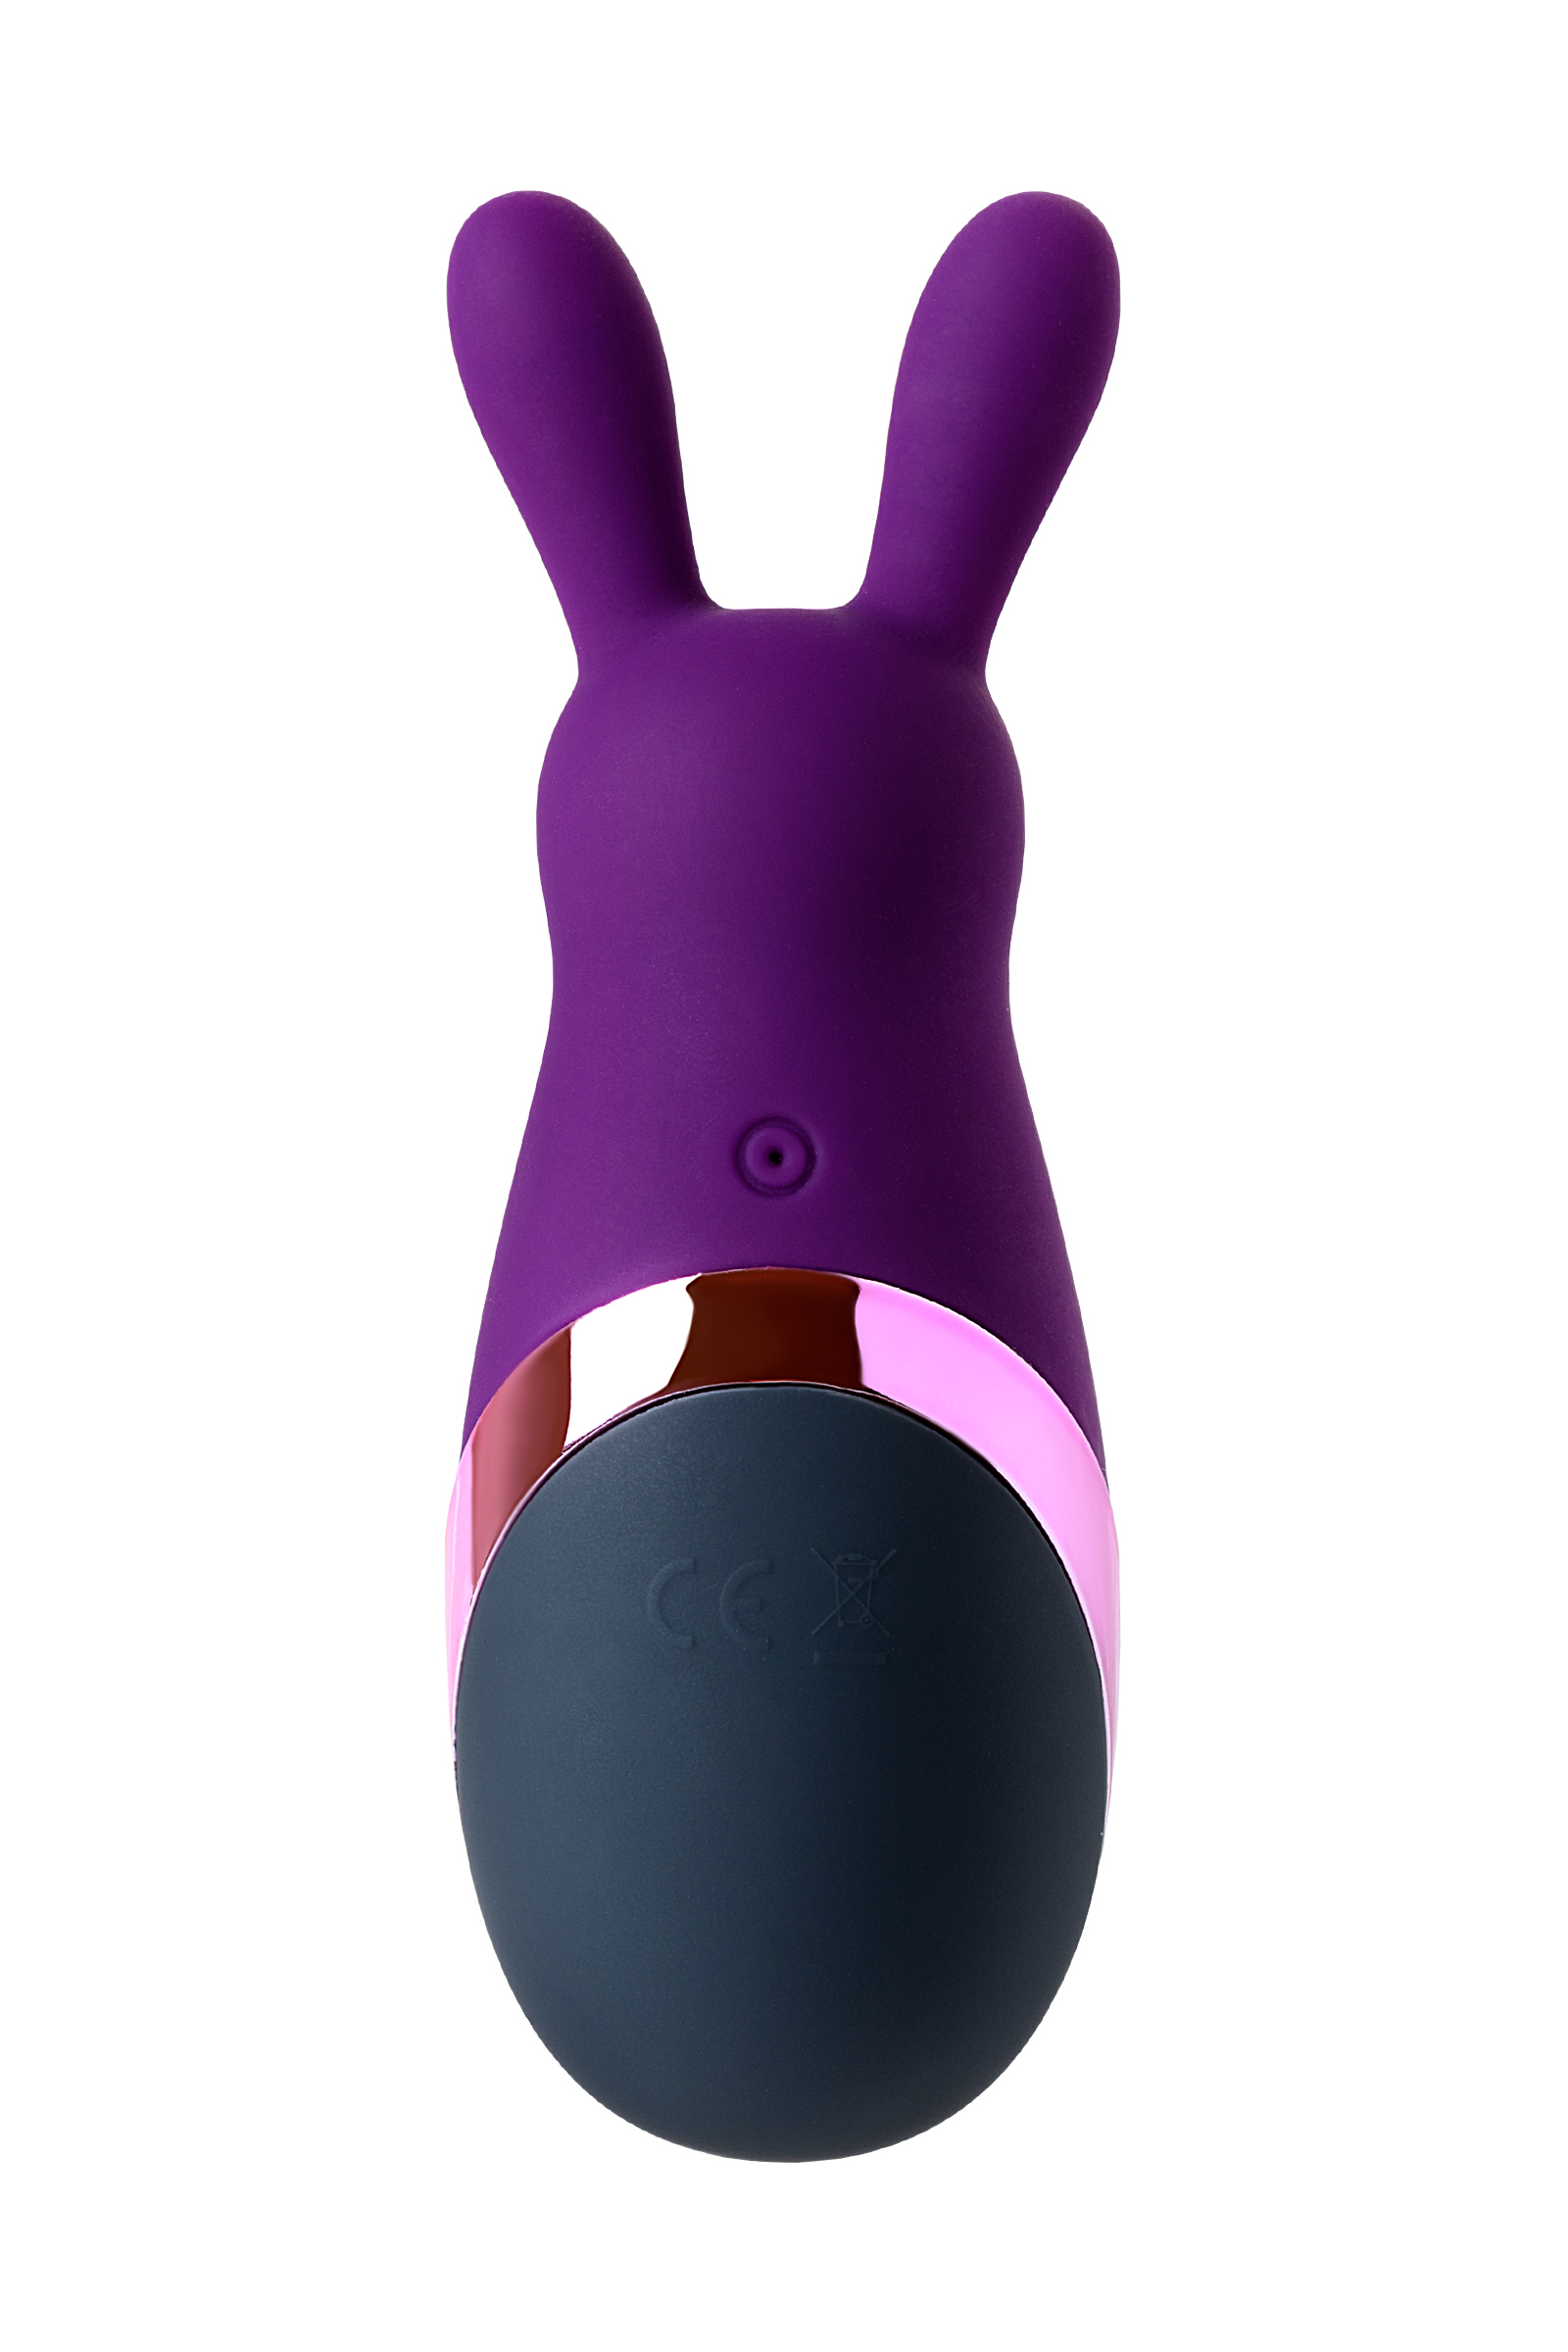 Стимулятор эрогенных зон Eromantica BUNNY, силикон, фиолетовый, 12,5. Фото N5